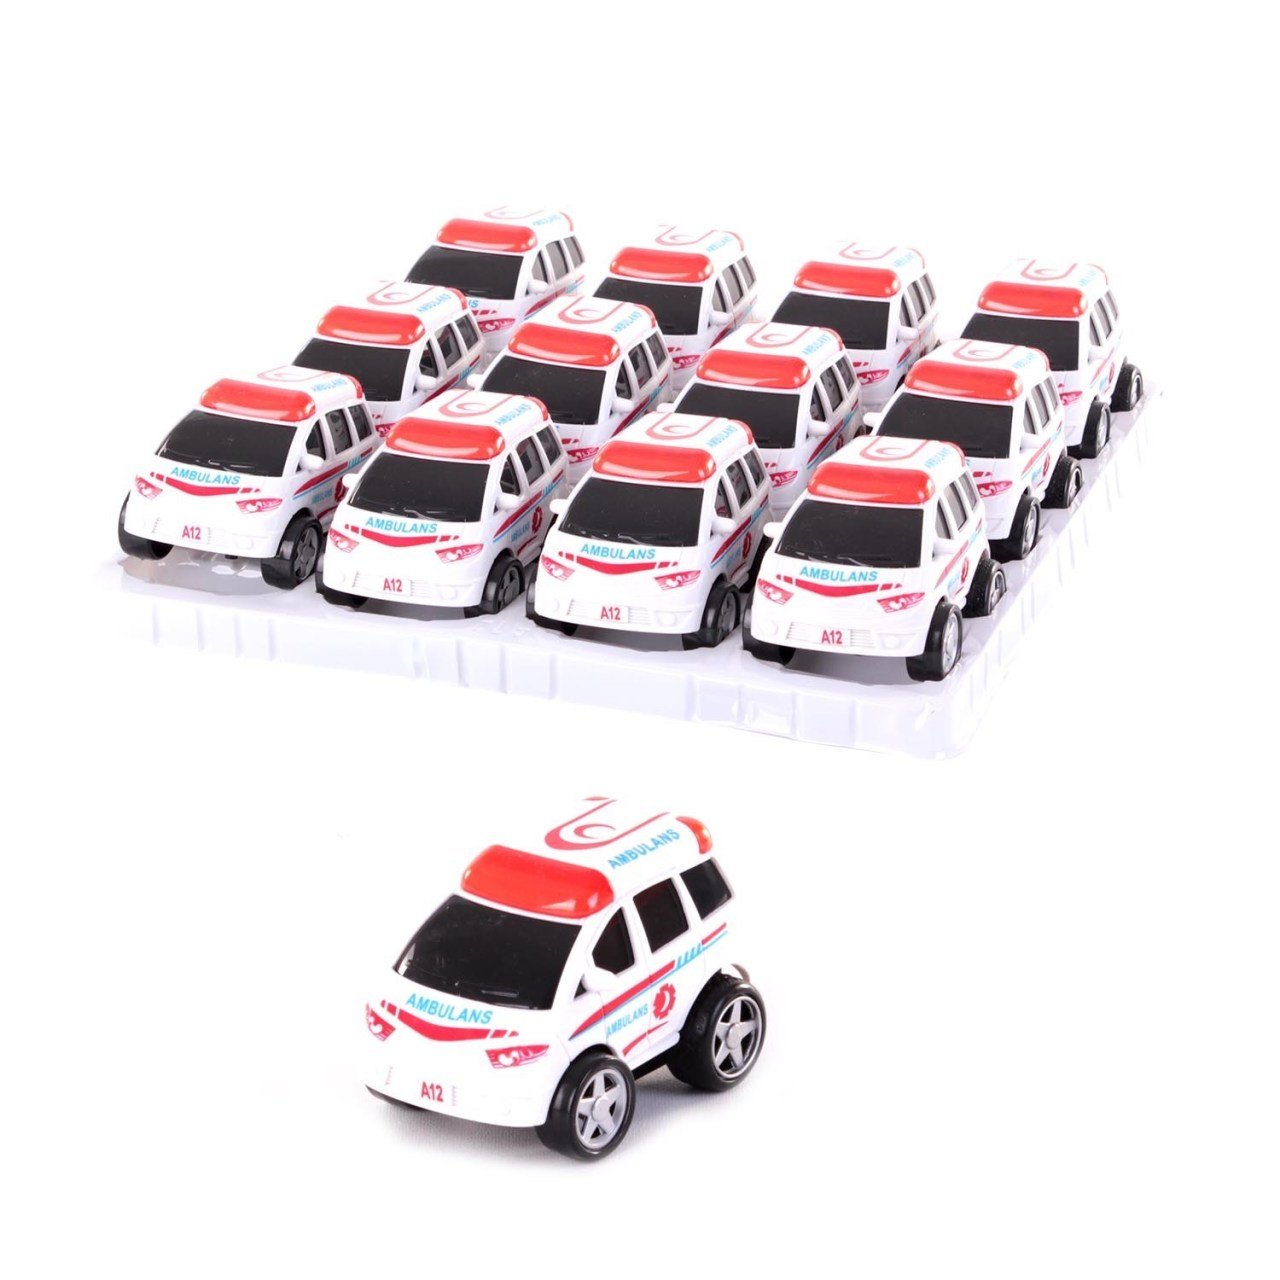 Vardem Oyuncak Araba A12 Sürtmeli Kırılmaz Ambulans 